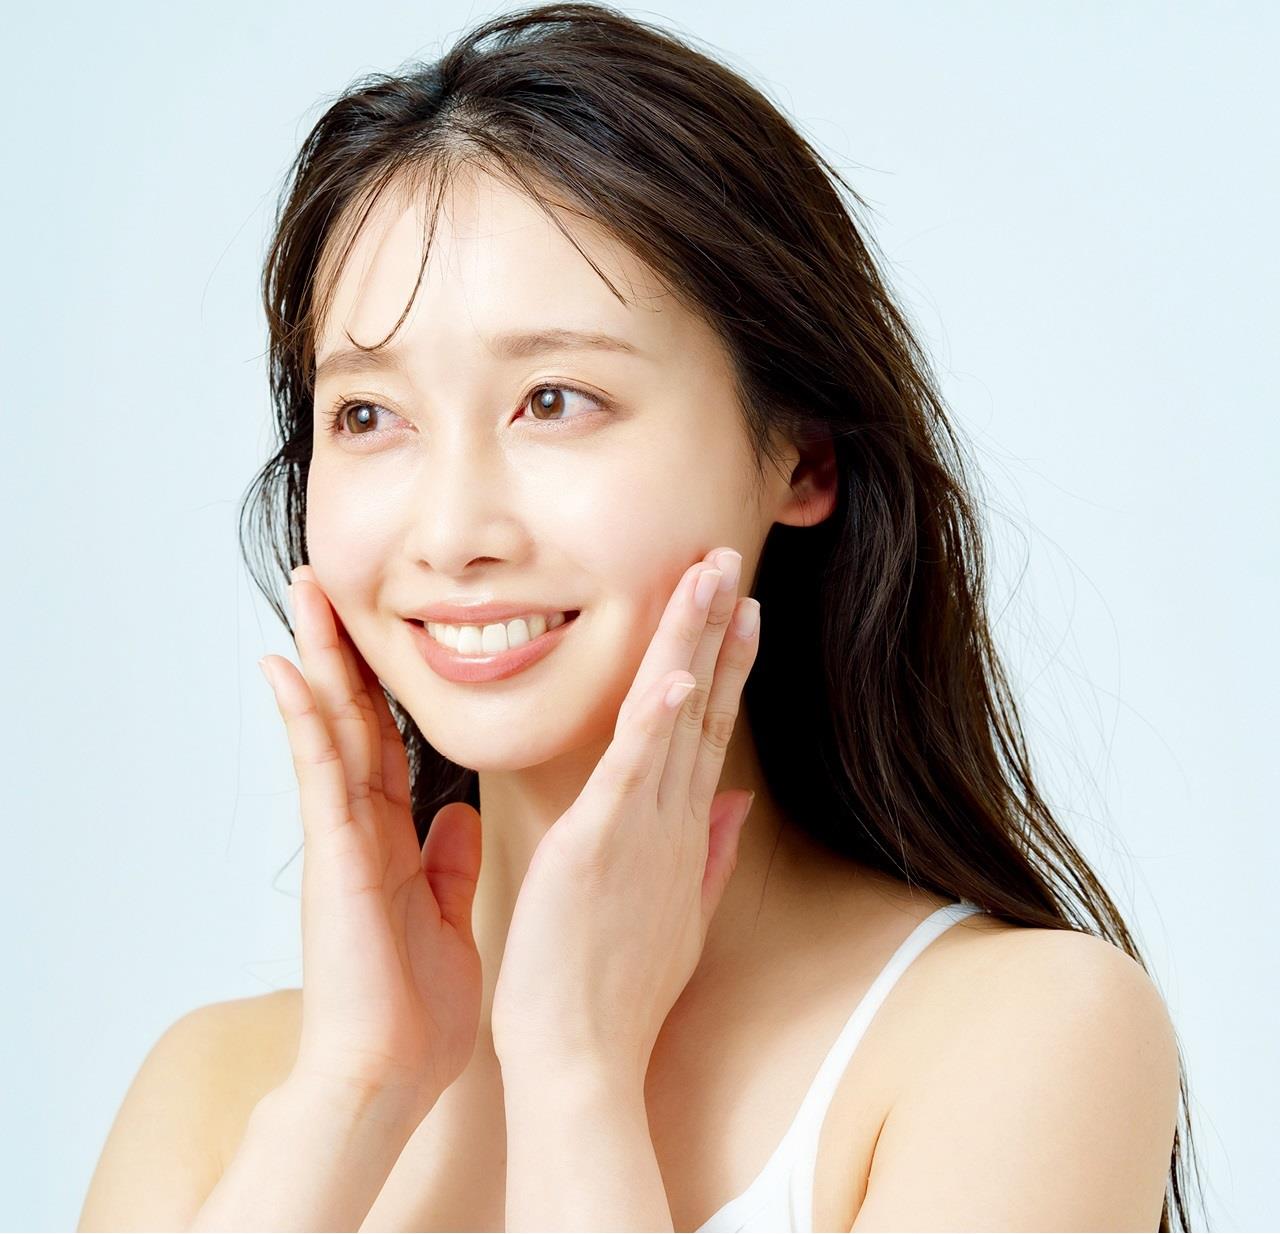 美膚訂製面膜膜力全開 分區KO 5大肌膚問題